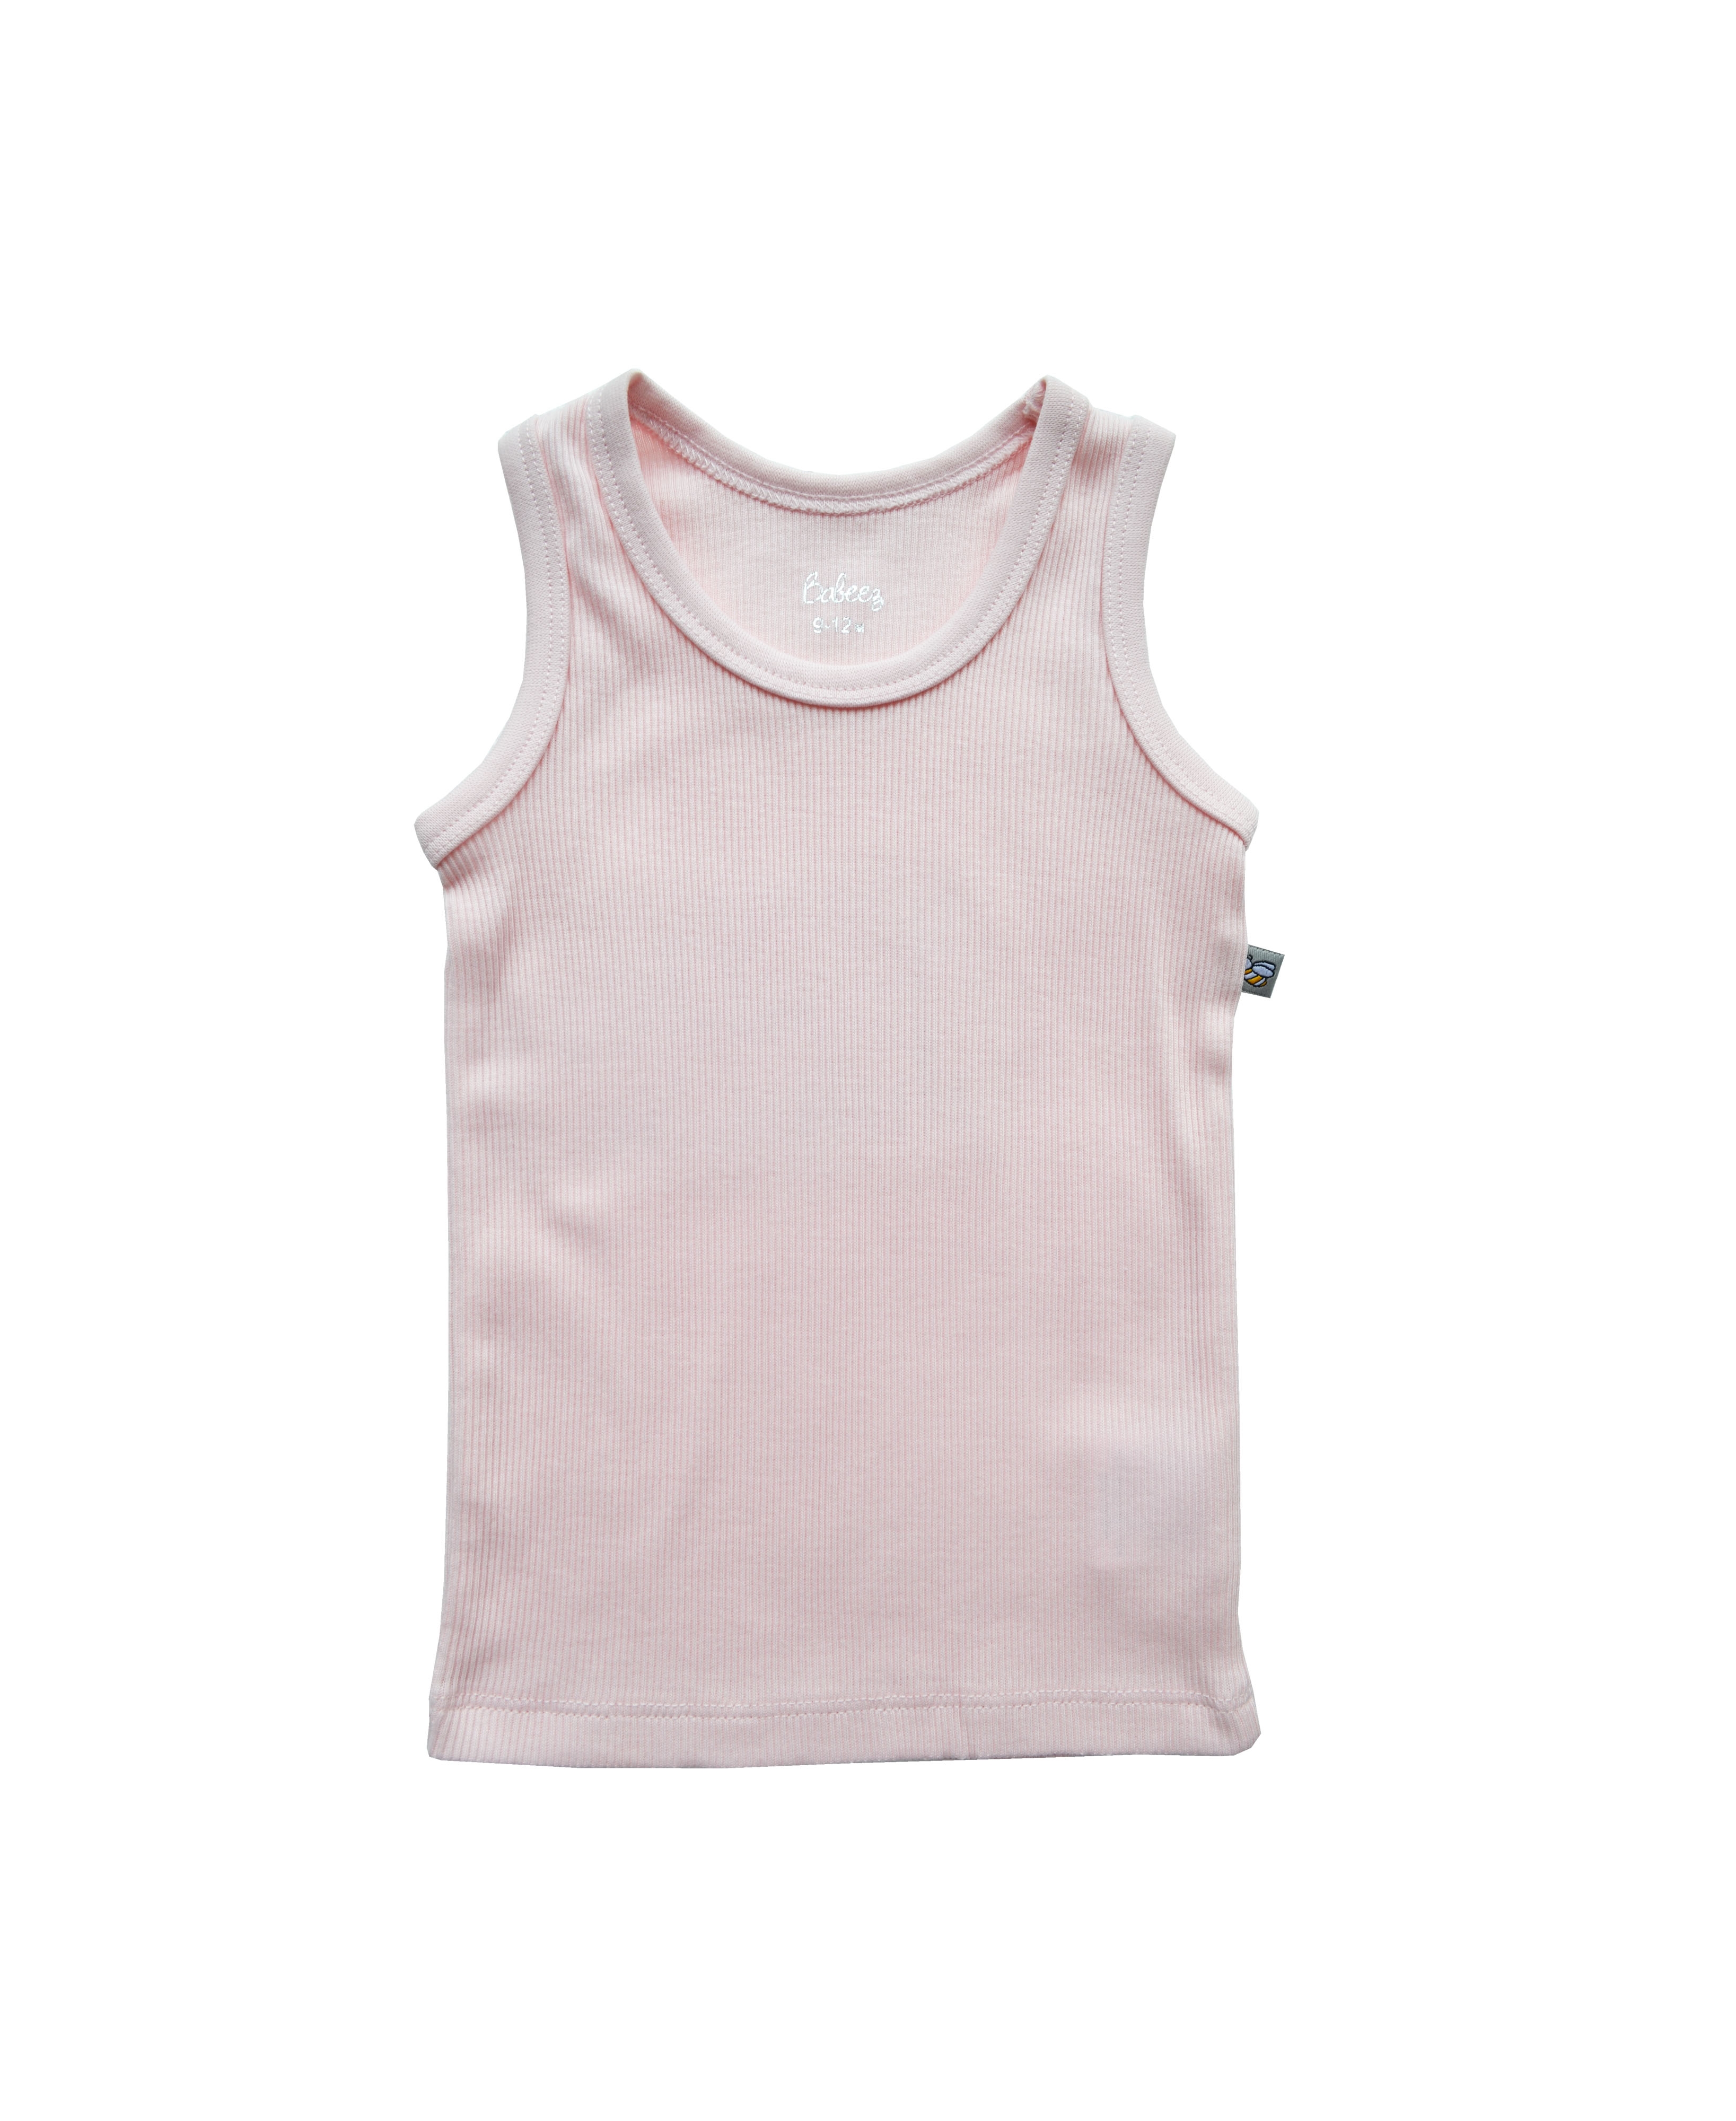 Babeez | Pink Vest (100% Cotton Rib) undefined